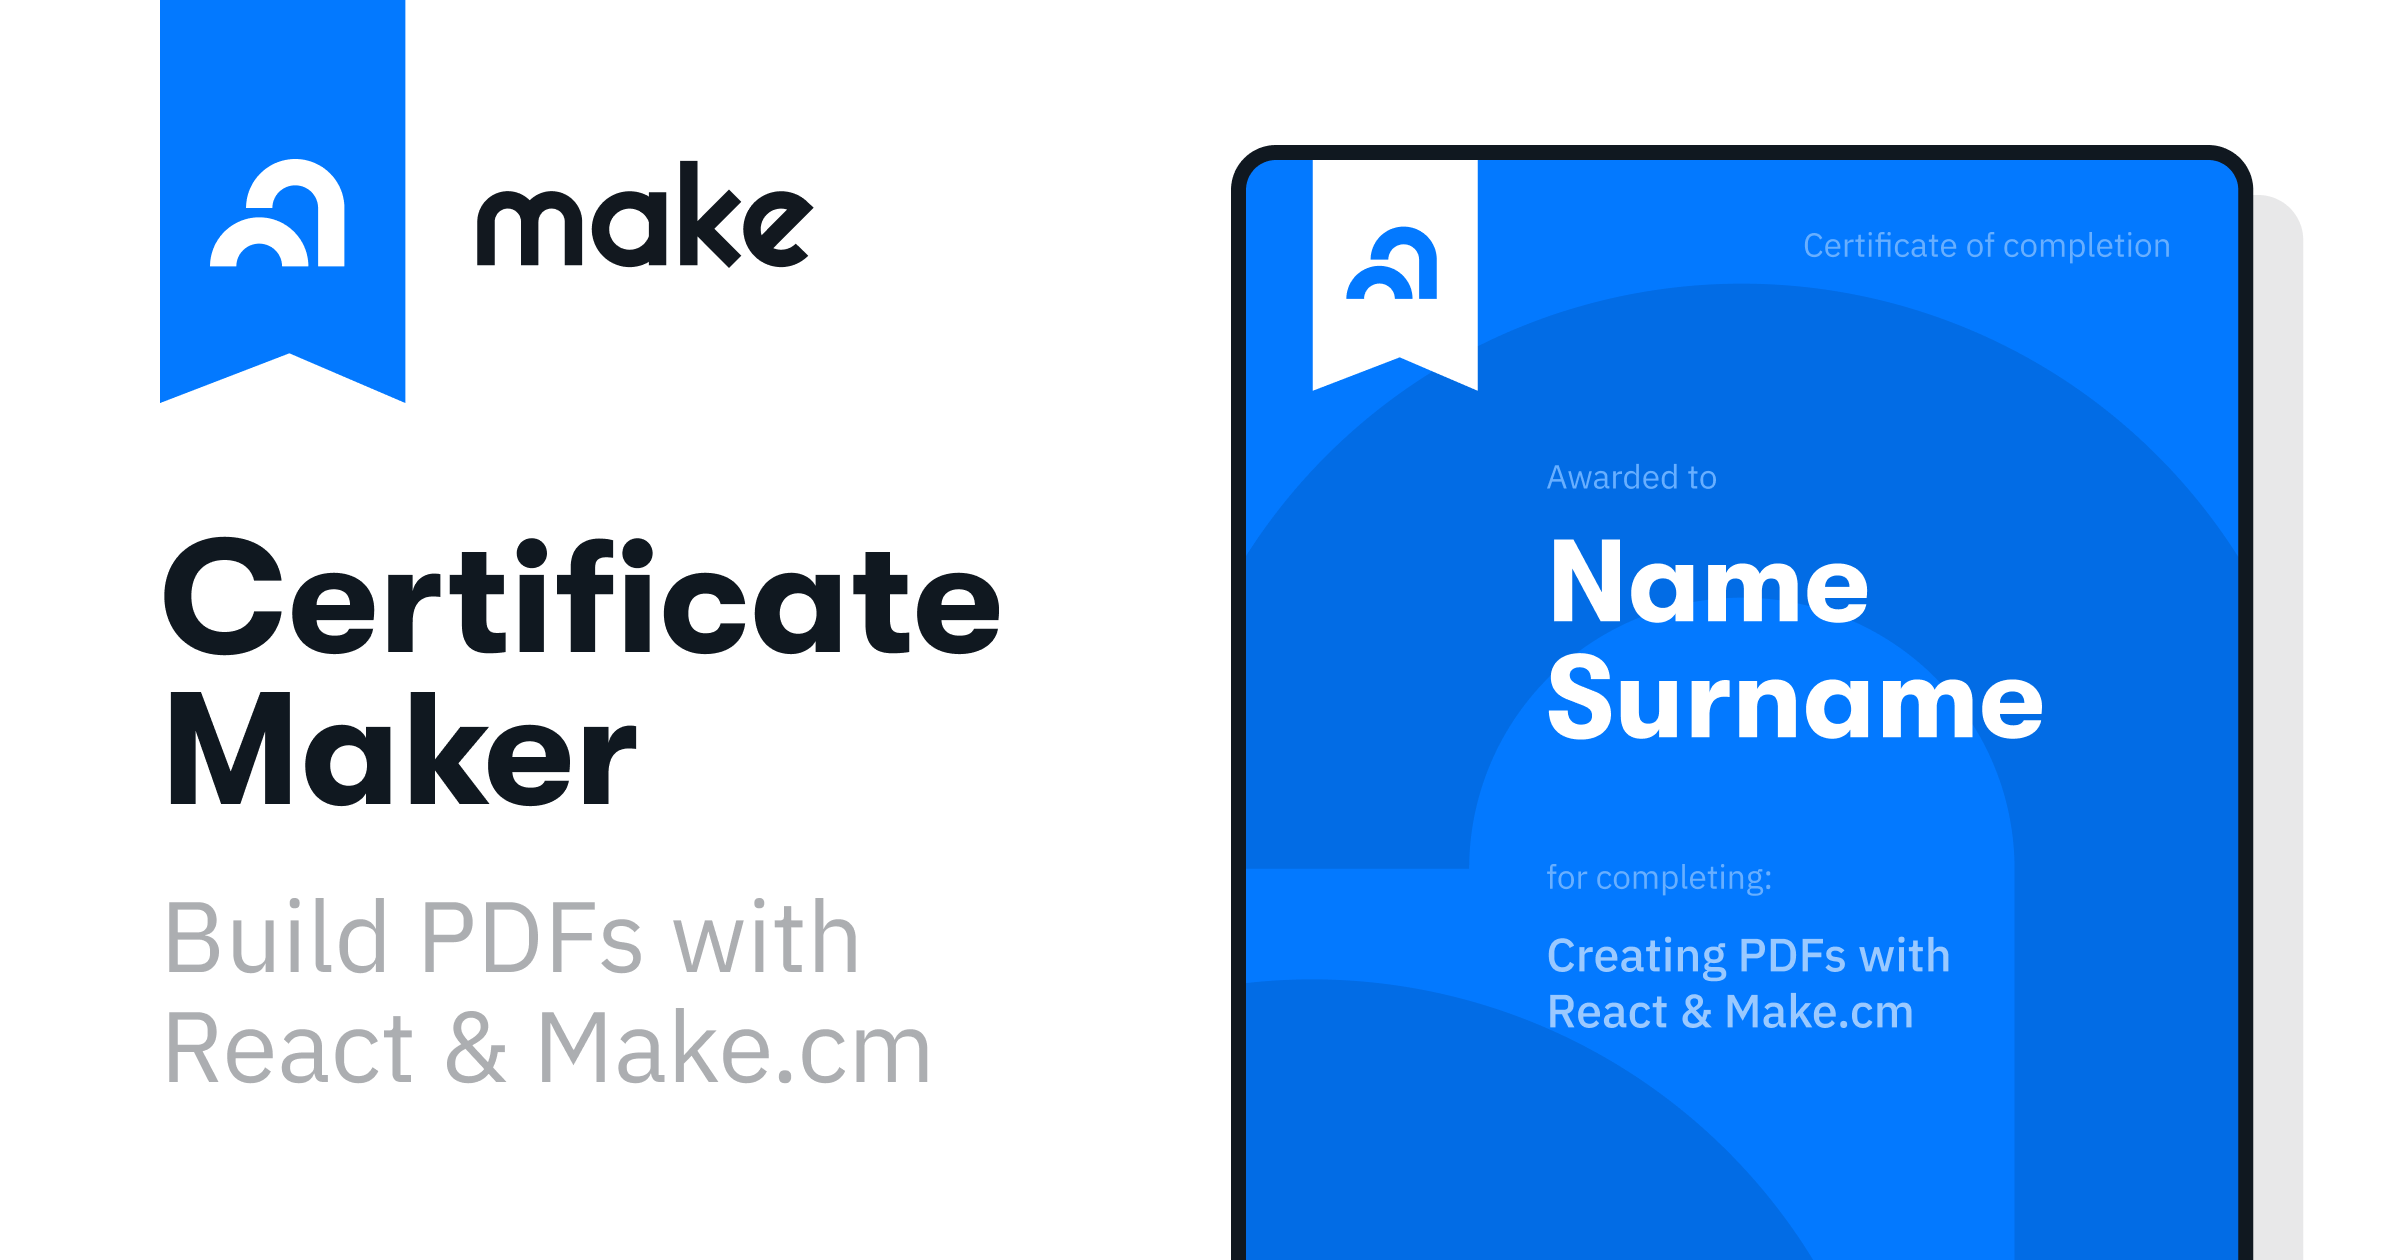 create a certificate template